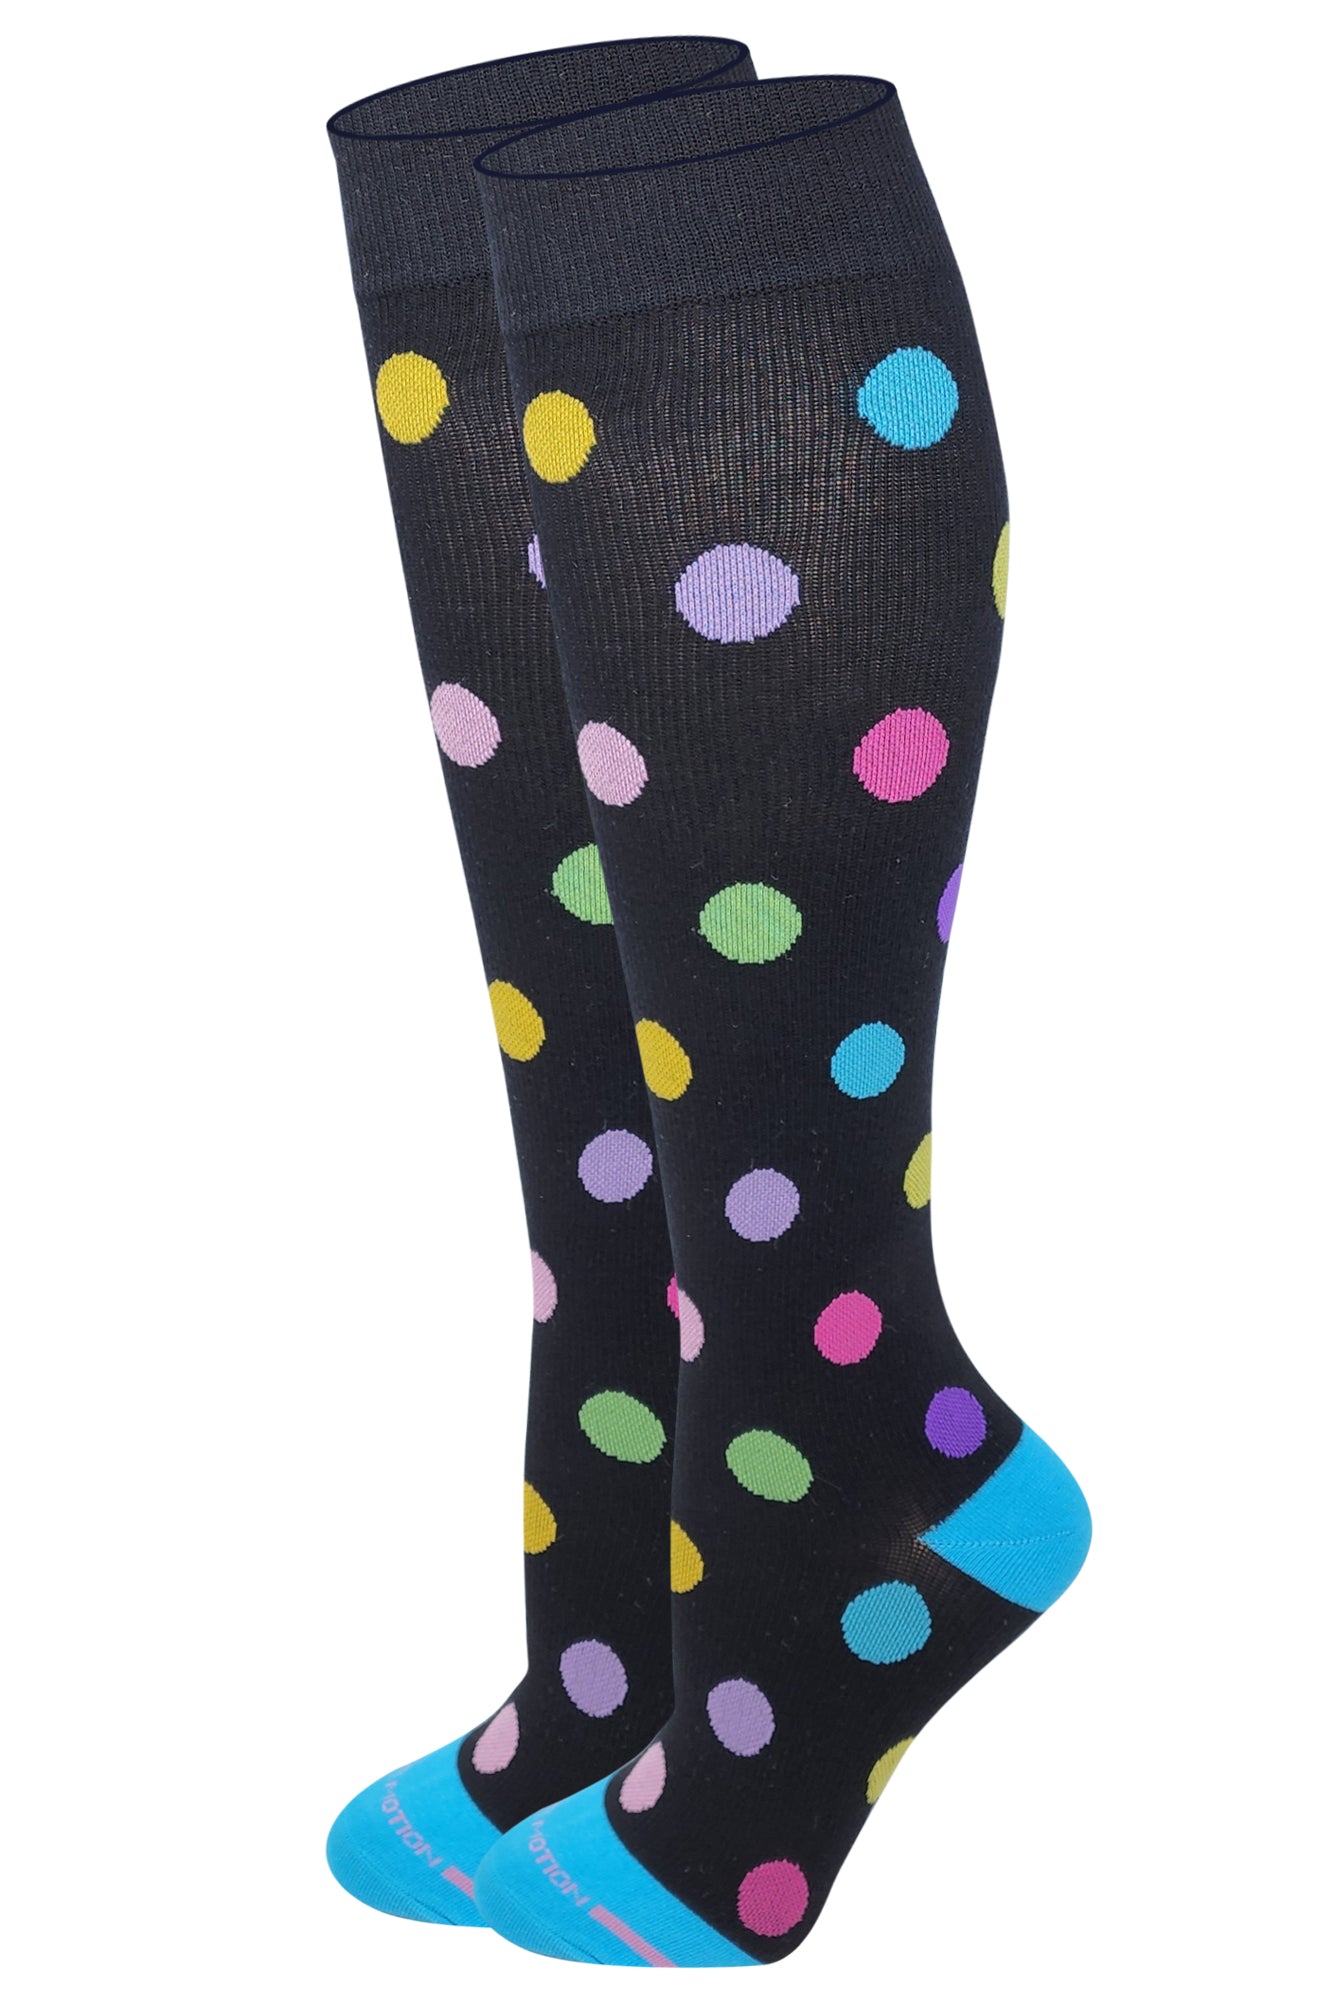 Dr. Motion Women Large Polka Dot Design Compression Knee High Socks